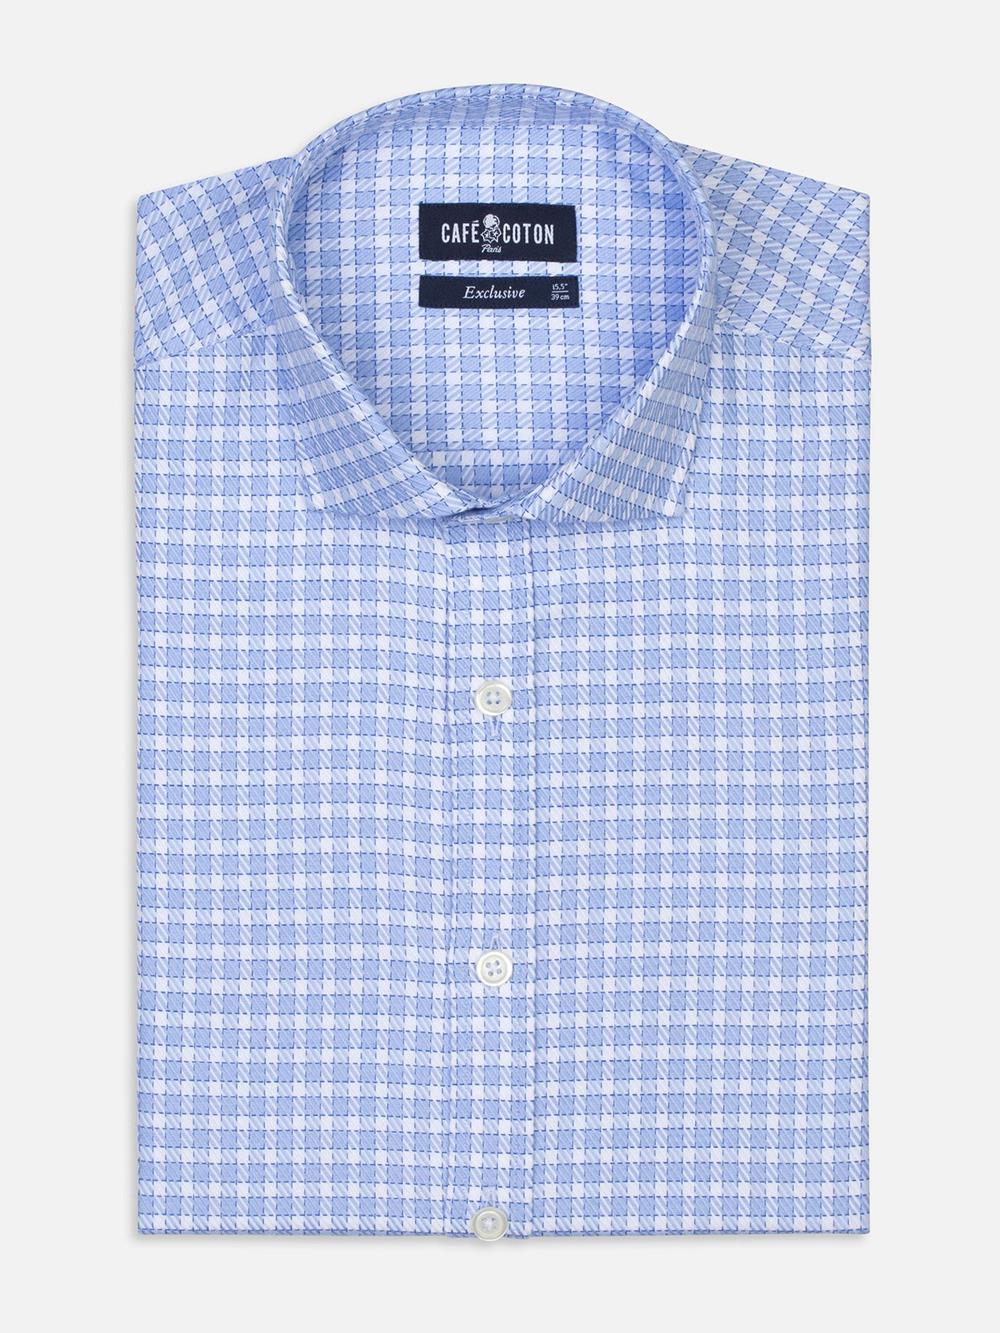 White checks blue twill shirt